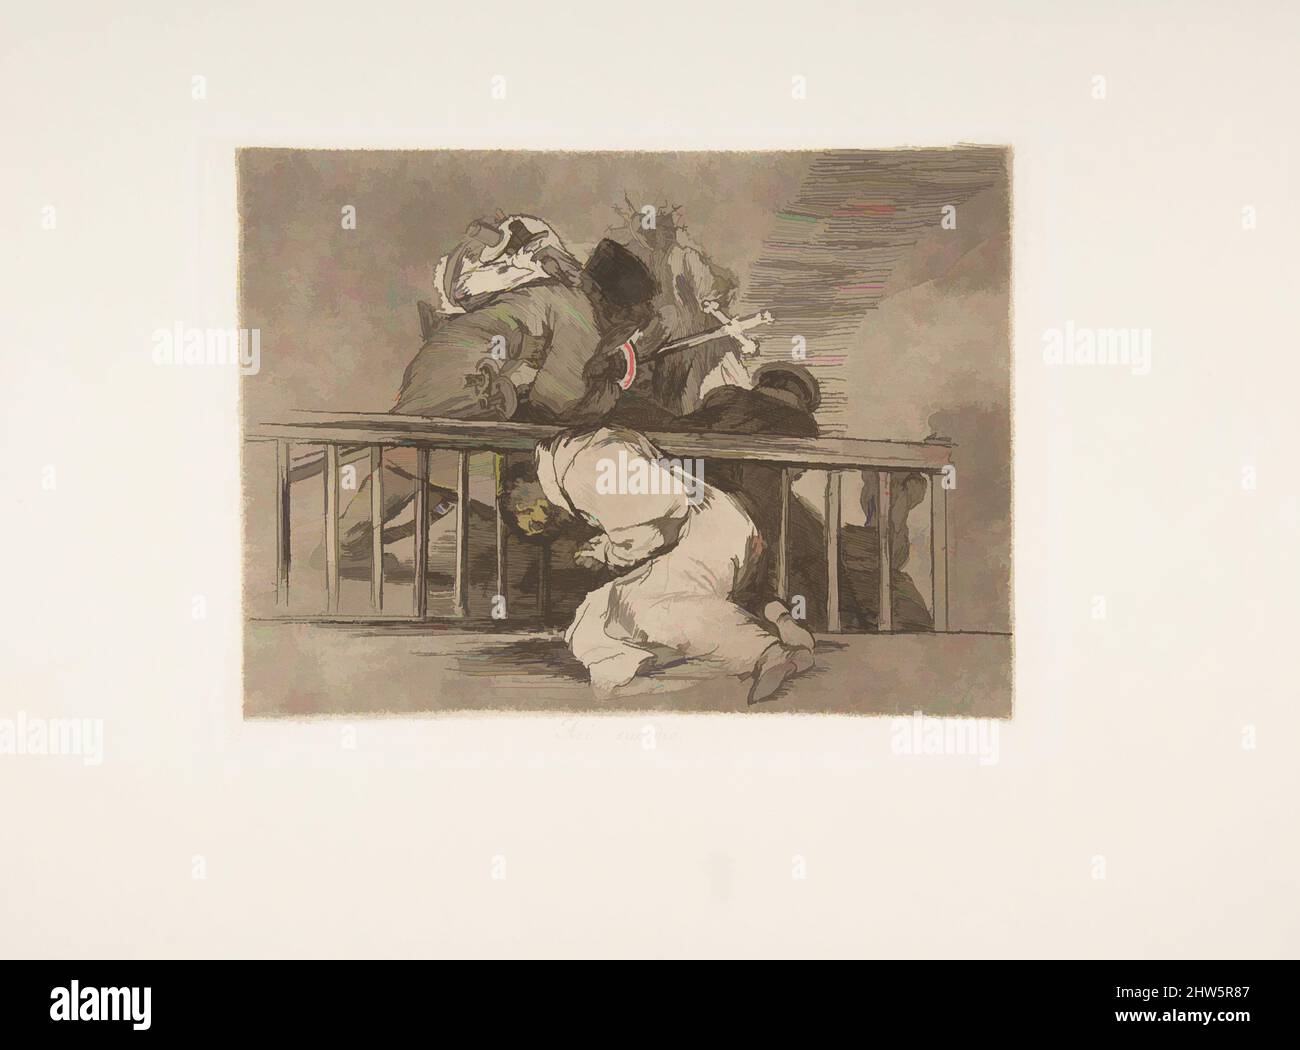 Kunst inspiriert von Tafel 47 aus 'die Katastrophen des Krieges' (Los Desastres de la Guerra): 'So geschah es'(Así sucedió.), 1810 (veröffentlicht 1863), Radierung,brünierte Lavis, Trockenpunkt, Burin und Burnisher, Platte: 6 1/16 × 8 1/16 Zoll (15,4 × 20,4 cm), Drucke, Goya (Francisco de Goya y, Klassisches Werk, modernisiert von Artotop mit einem Schuss Moderne. Formen, Farbe und Wert, auffällige visuelle Wirkung auf Kunst. Emotionen durch Freiheit von Kunstwerken auf zeitgemäße Weise. Eine zeitlose Botschaft, die eine wild kreative neue Richtung verfolgt. Künstler, die sich dem digitalen Medium zuwenden und die Artotop NFT erschaffen Stockfoto